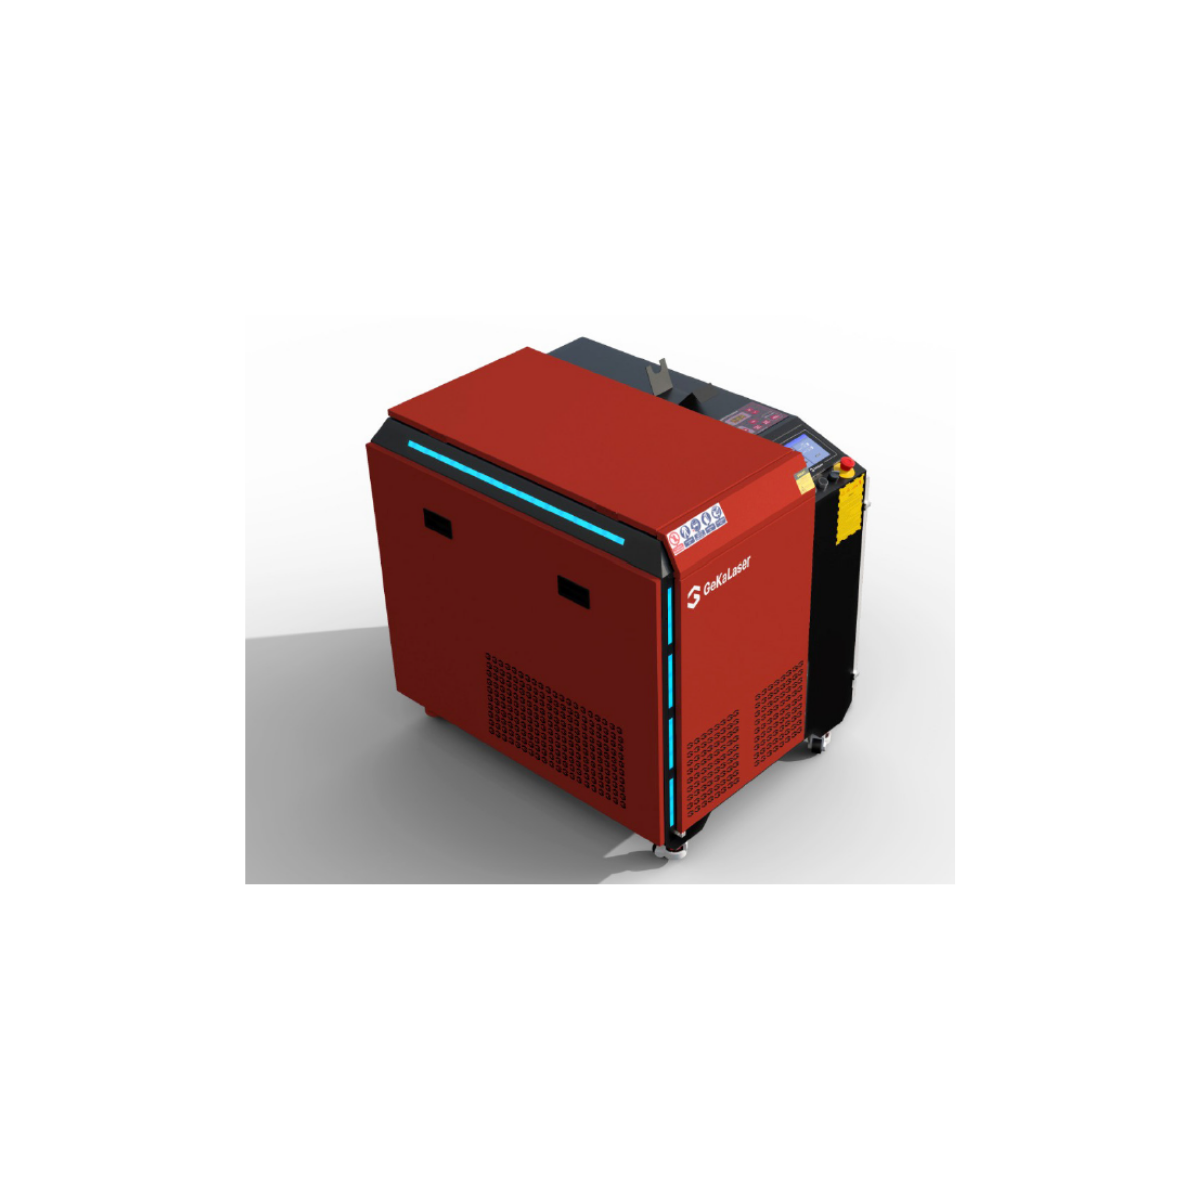 GeKa Laser 1500 Lazer Kaynak Makinesi